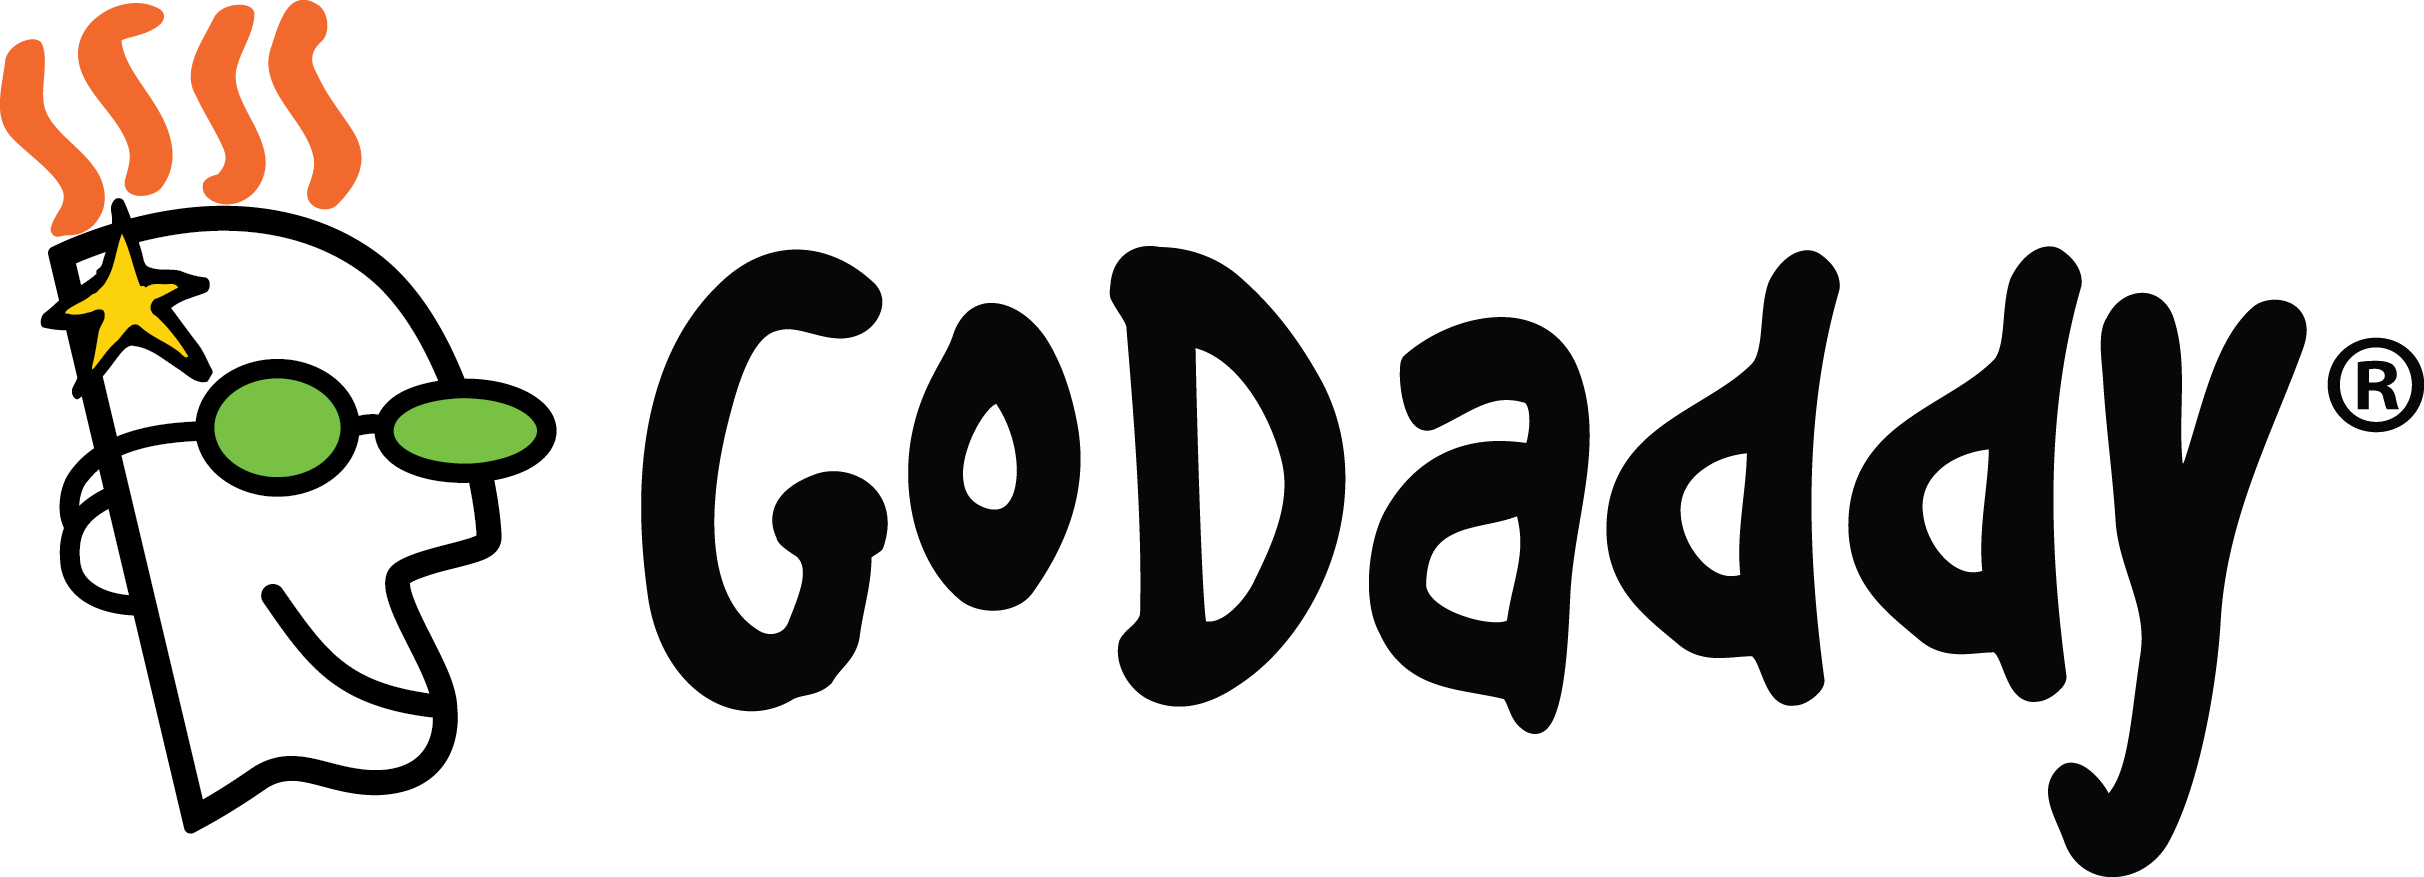 Godaddy Logo Path Forward